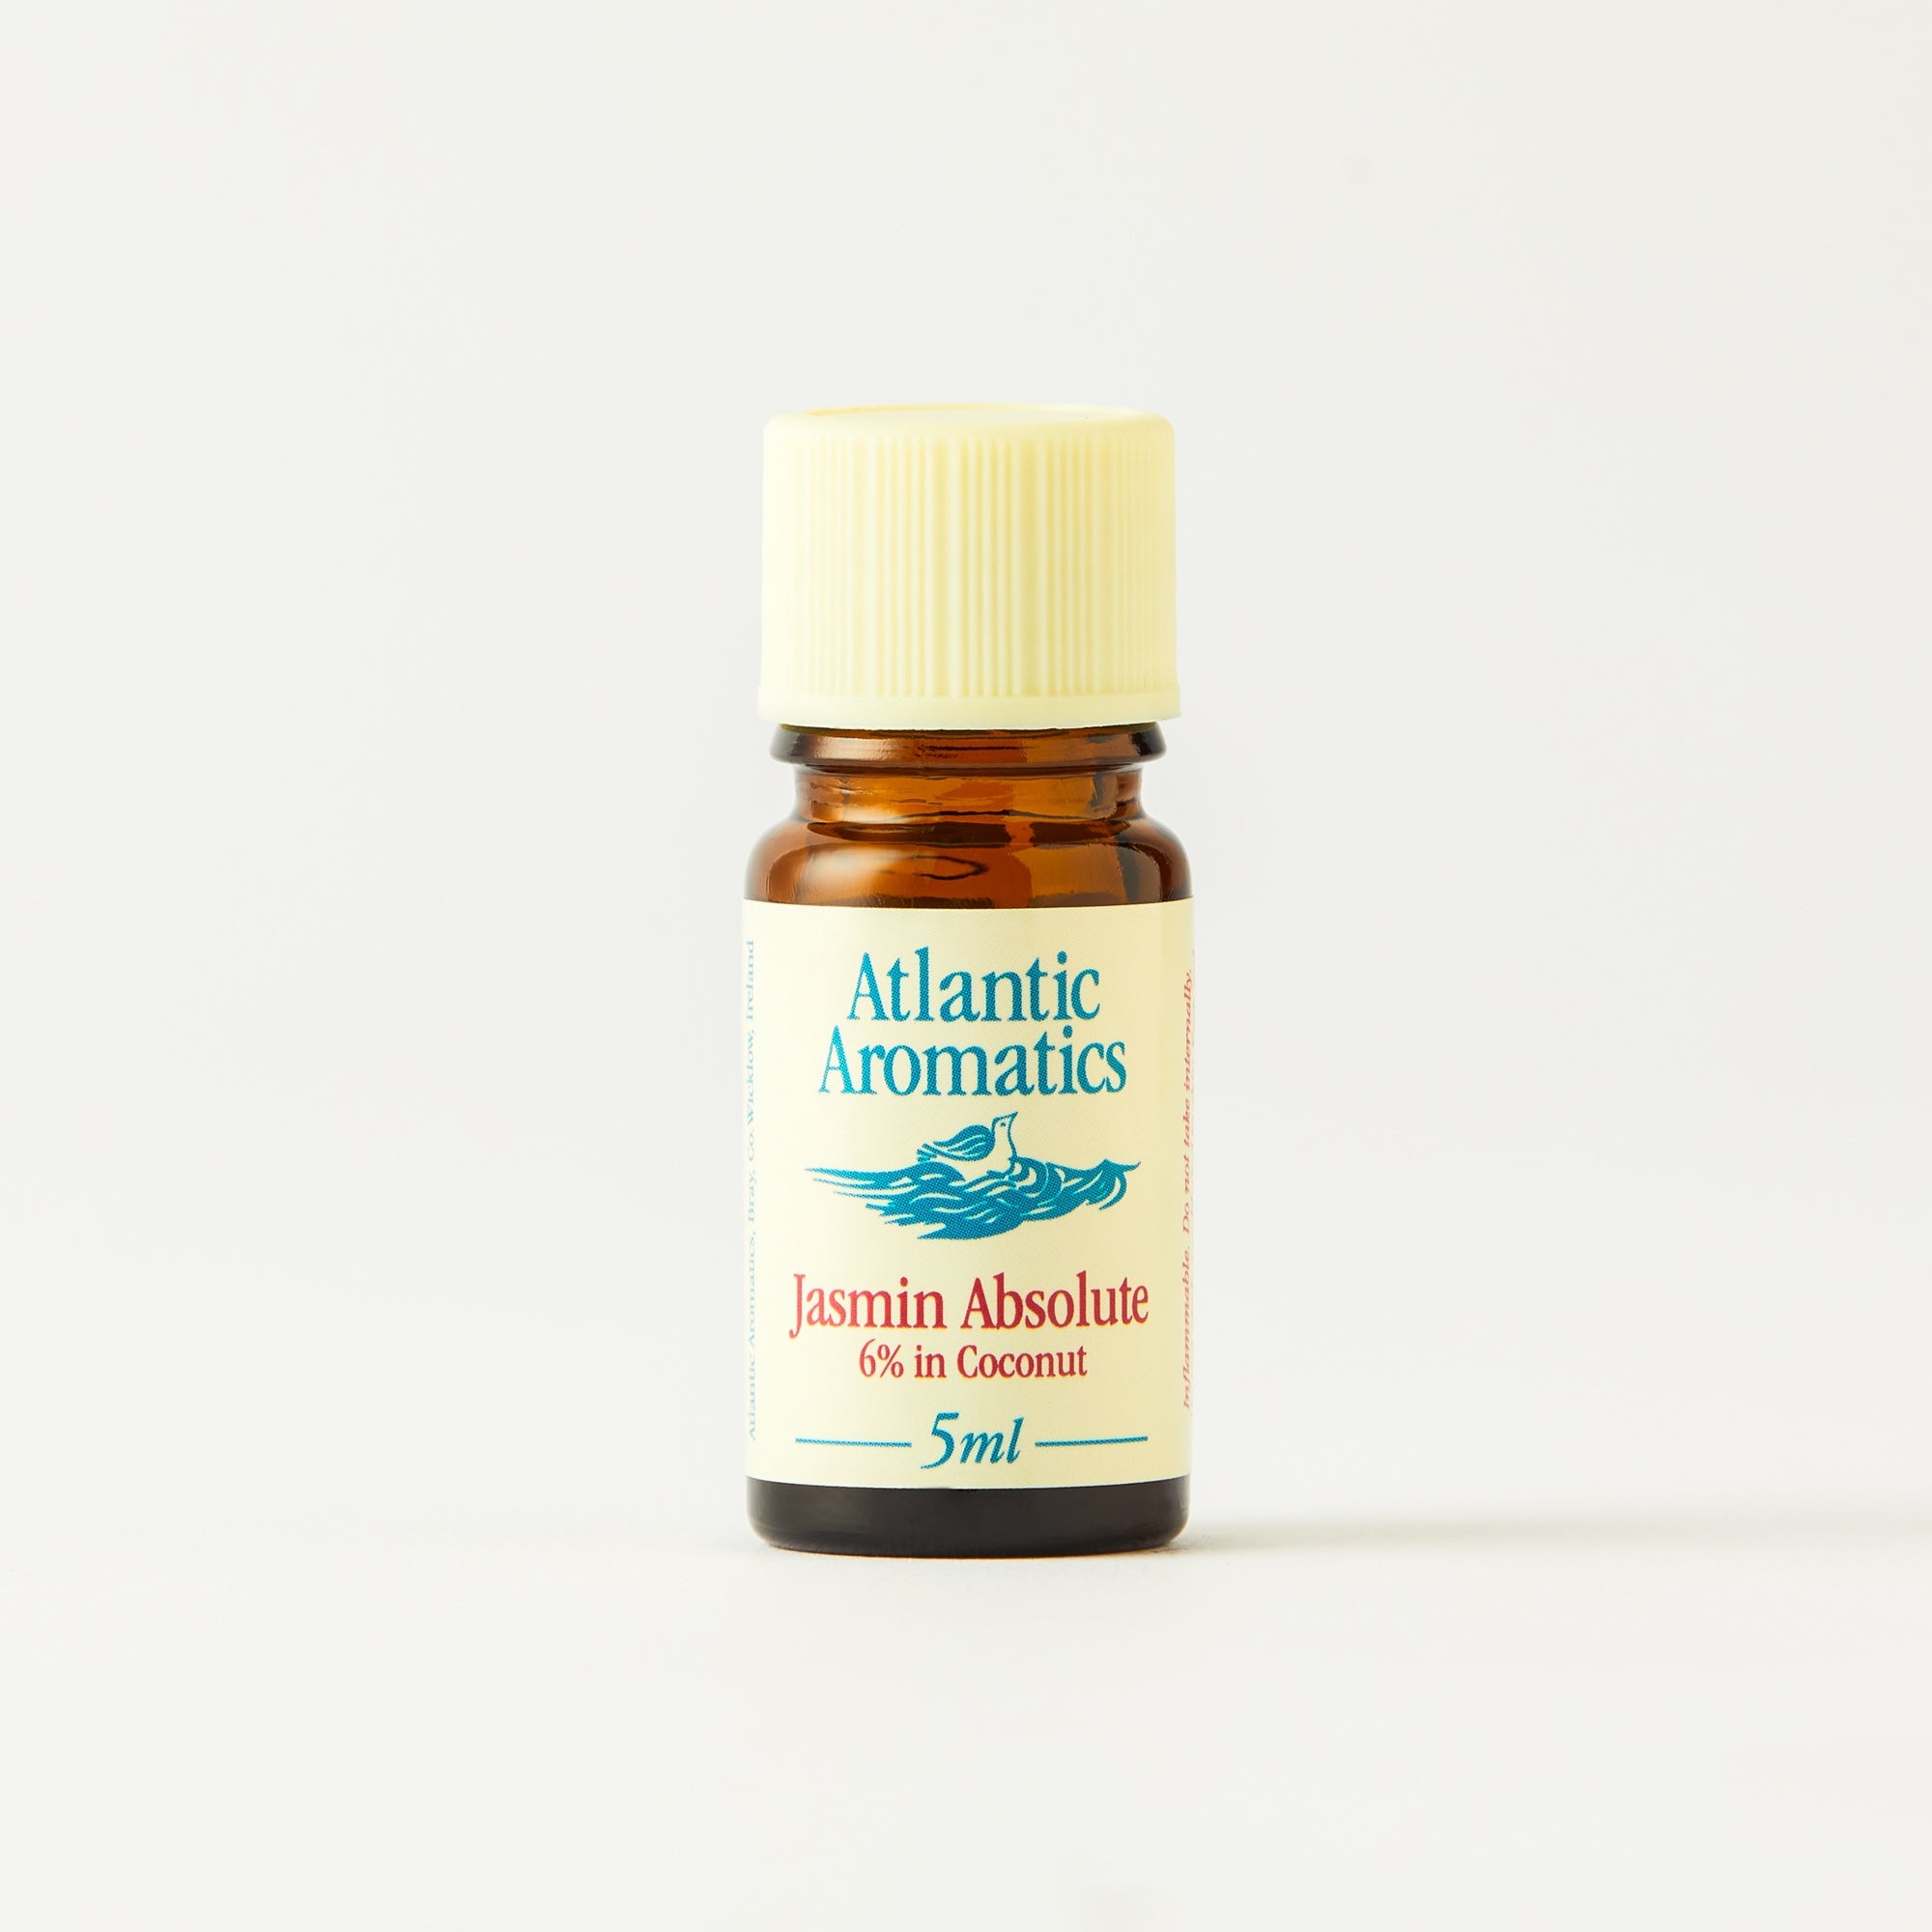 Atlantic Aromatics Jasmin 6% in Coconut Oil